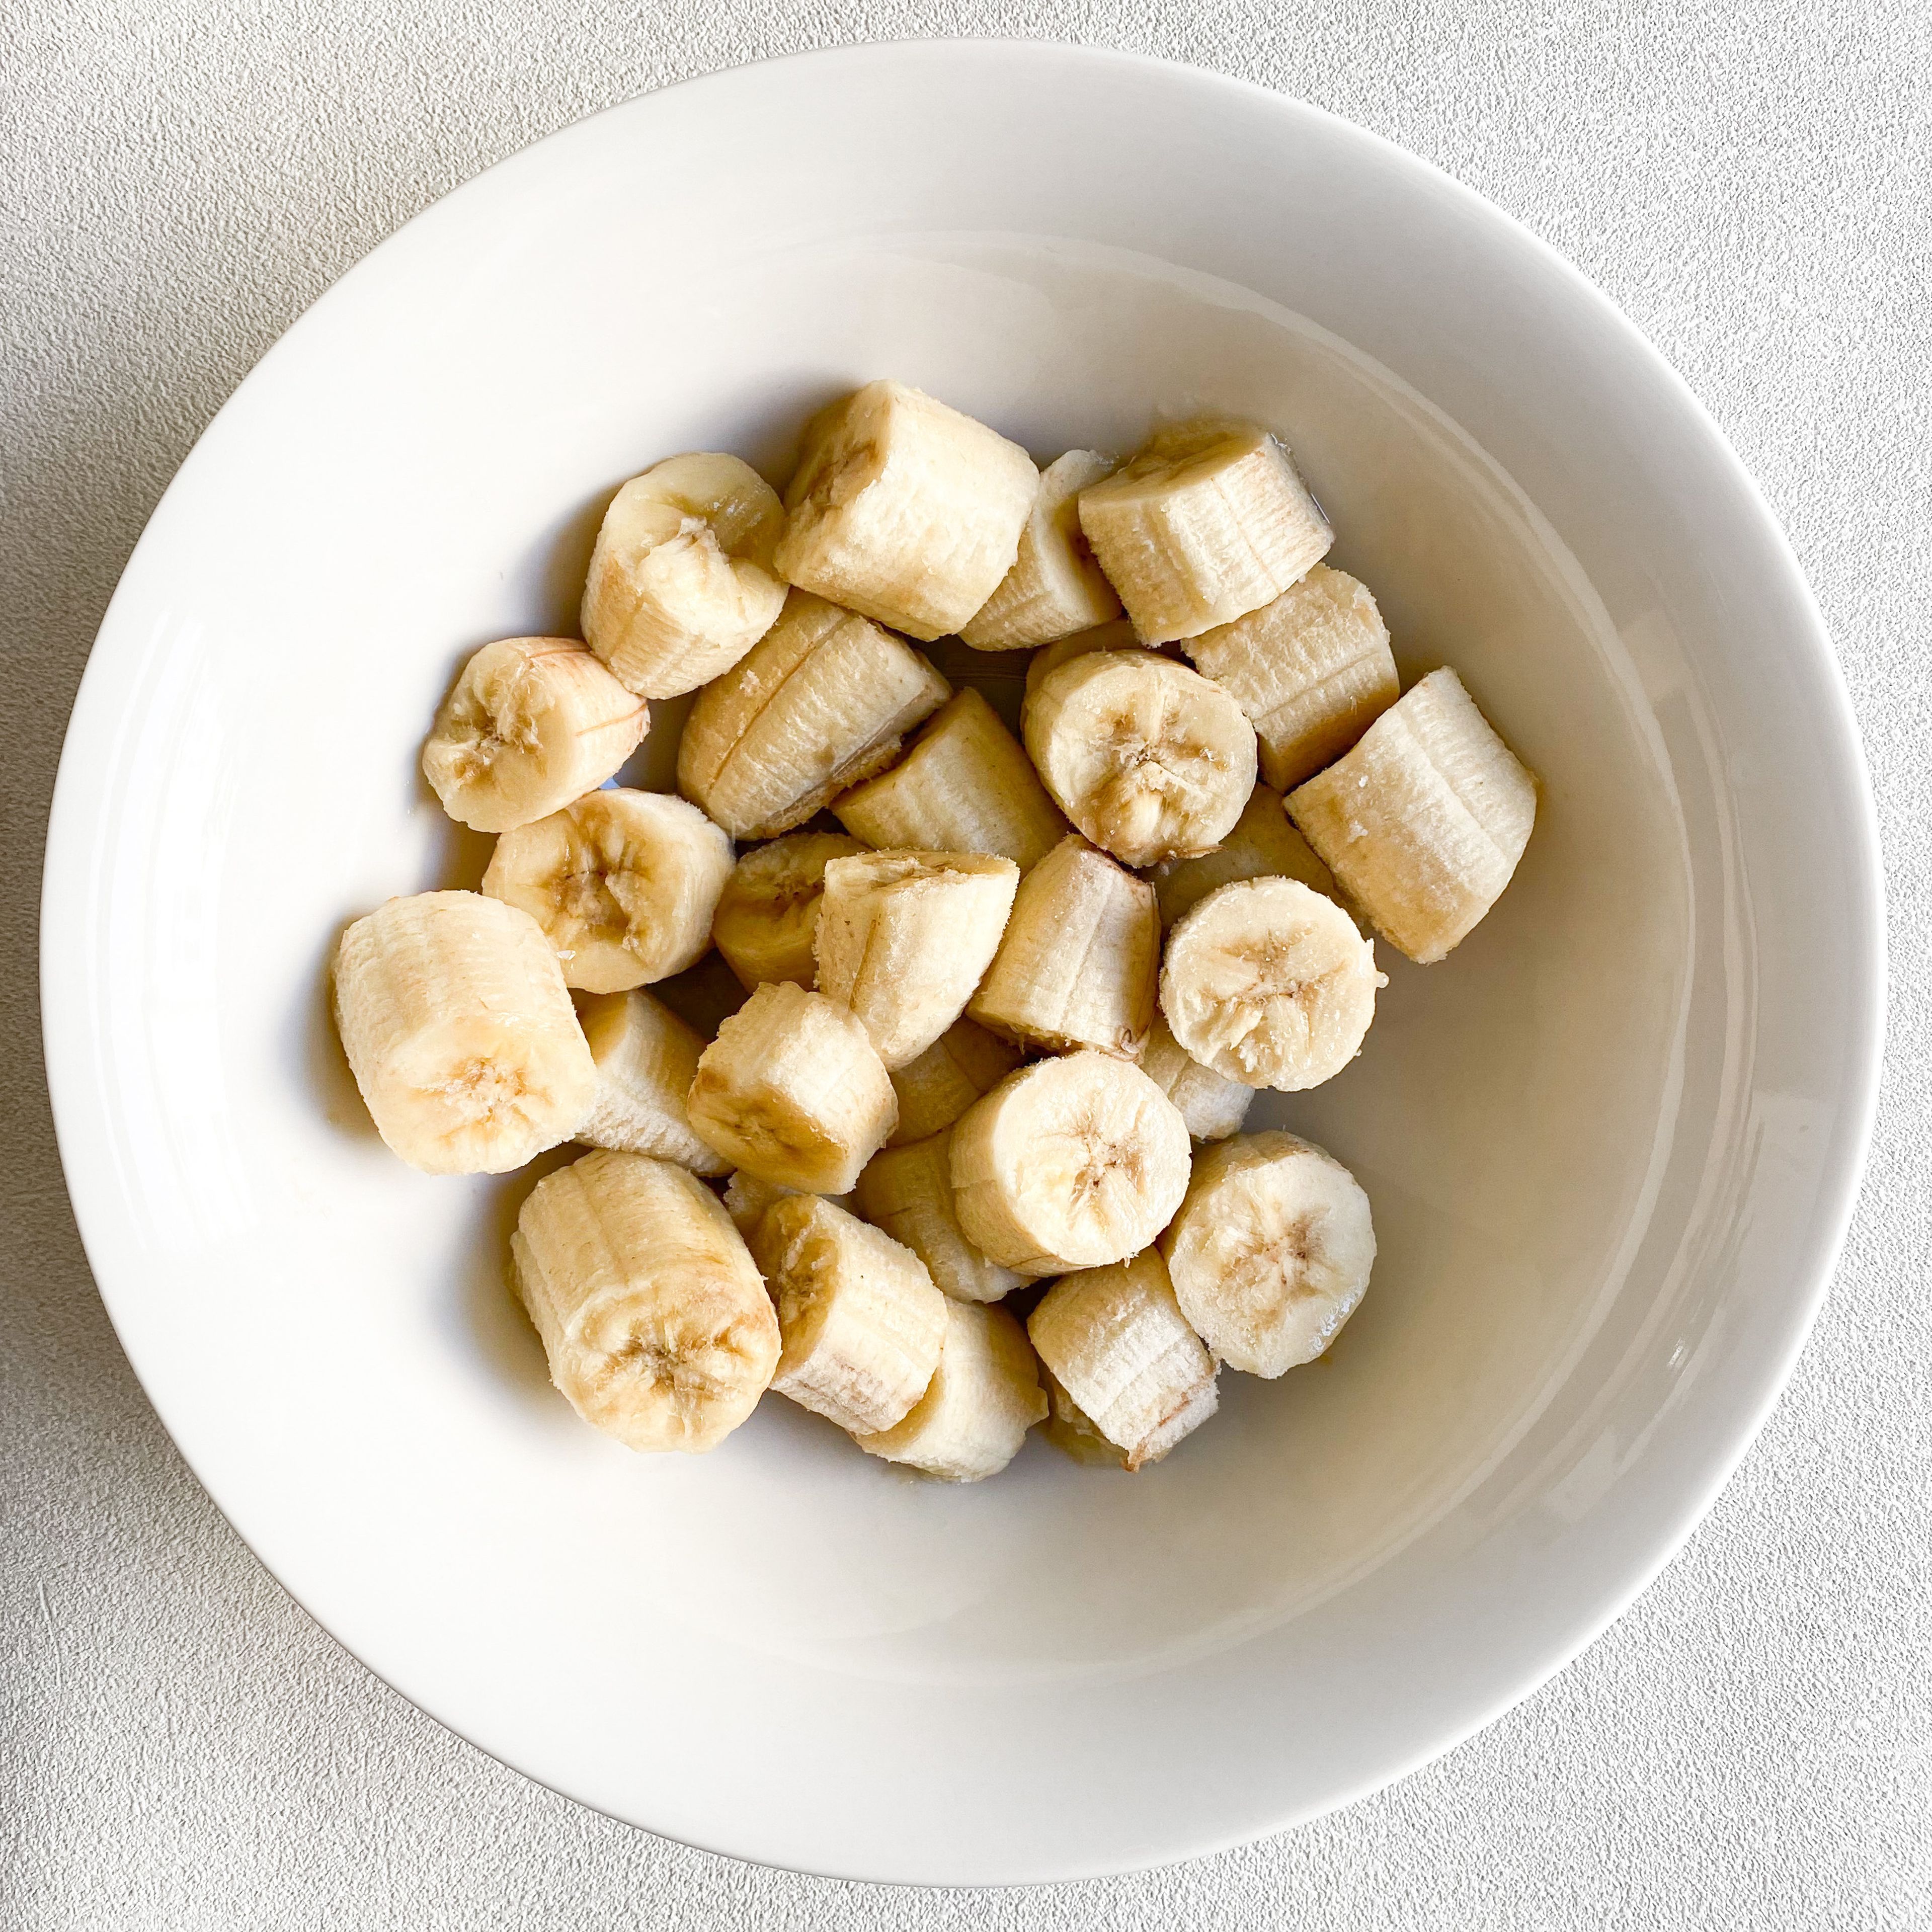 Die Bananen in einer großen Schüssel mit einer Gabel zerdrücken. Je reifer die Bananen sind, desto besser. Dann Öl, Ahornsirup und Hafermilch unterrühren, bis alles gut eingearbeitet ist. Wenn du kein Veganer bist, kannst du statt Ahornsirup auch Honig verwenden. Außerdem funktioniert auch jede andere Pflanzenmilch sehr gut.